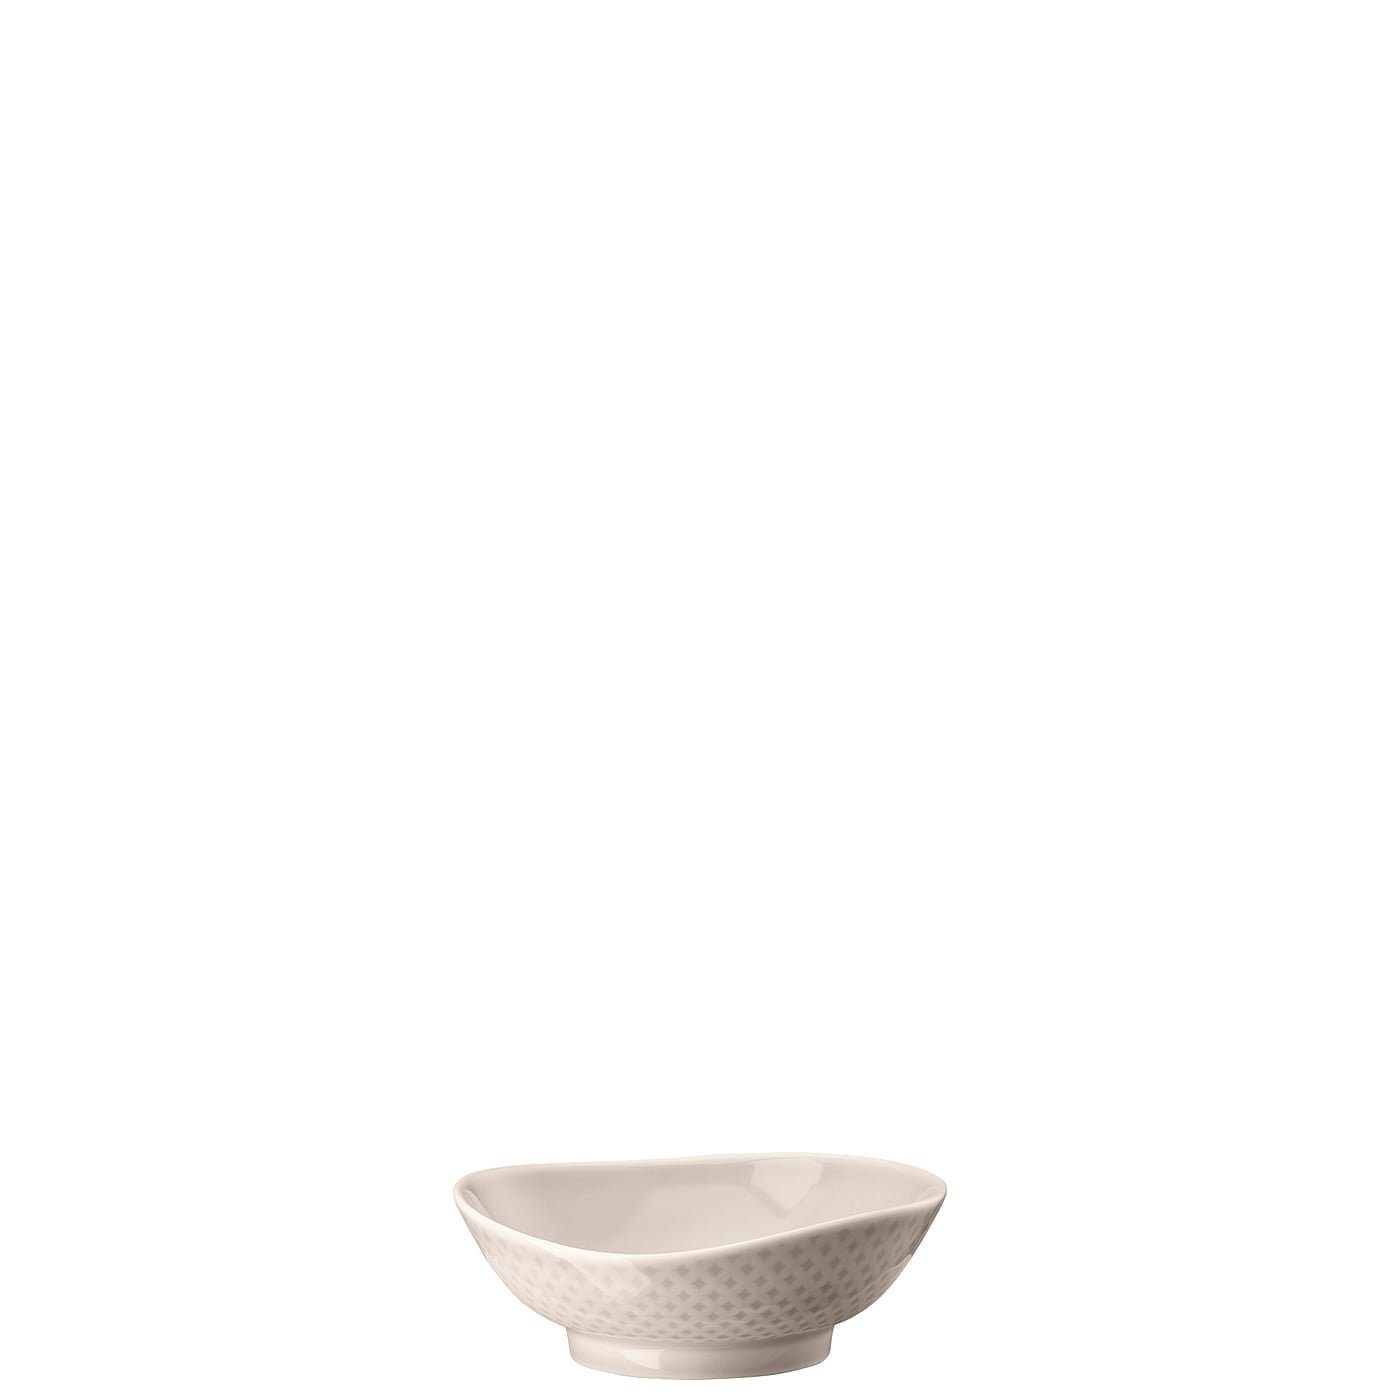 Rosenthal Schale Junto Soft Shell Bowl 12 cm, Porzellan, spülmaschinengeeignet